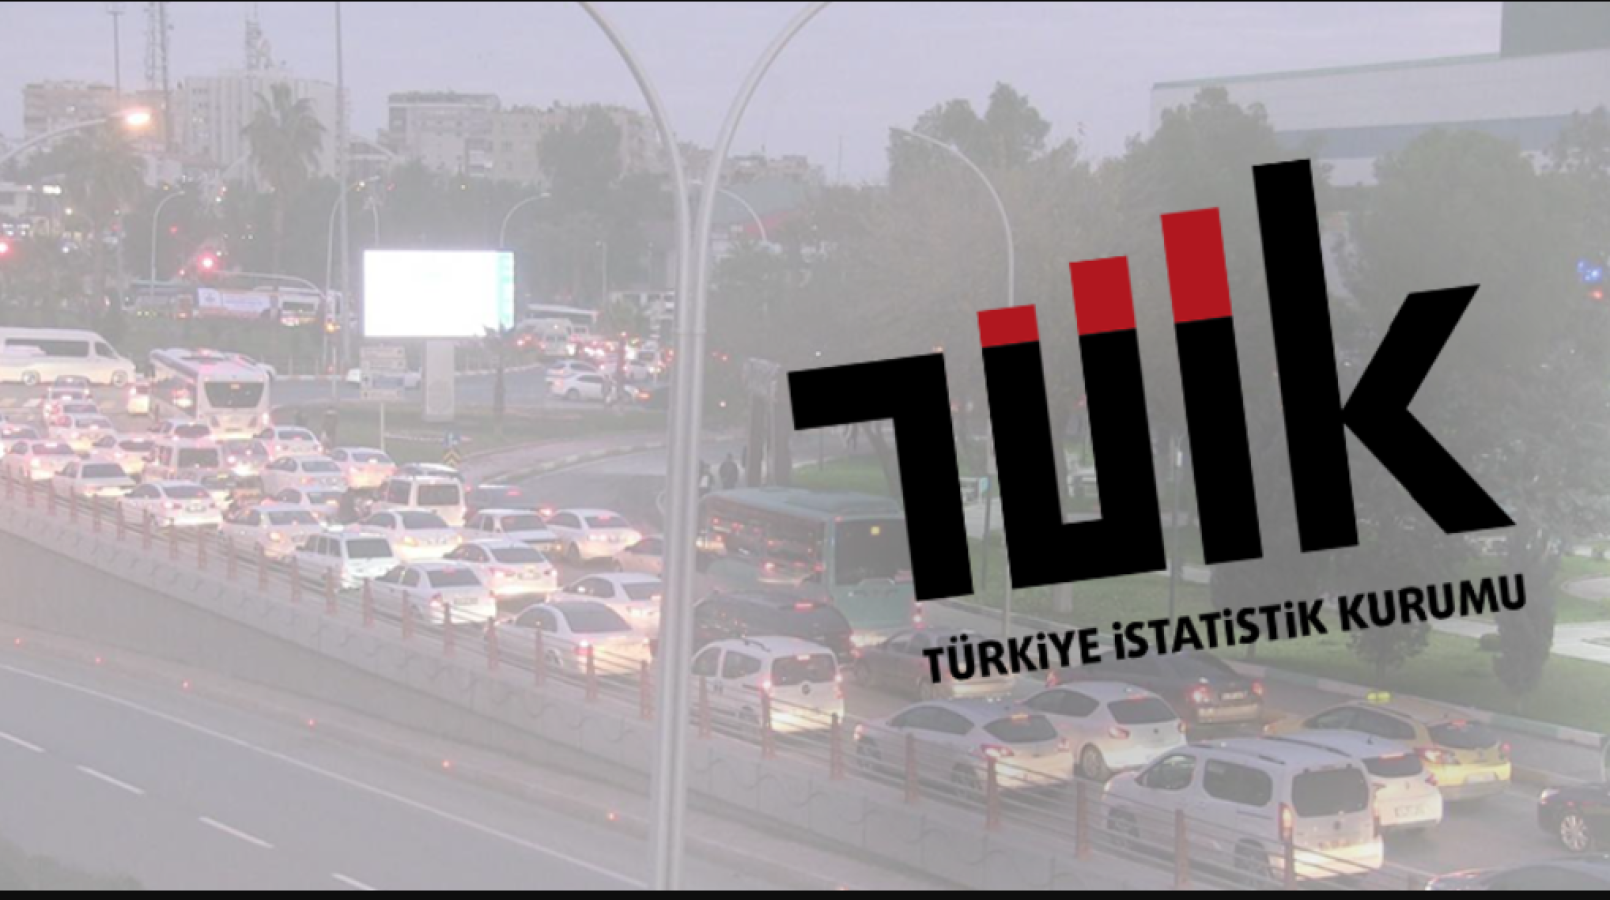 Urfa’da trafiğe kayıtlı araç sayısı arttı;